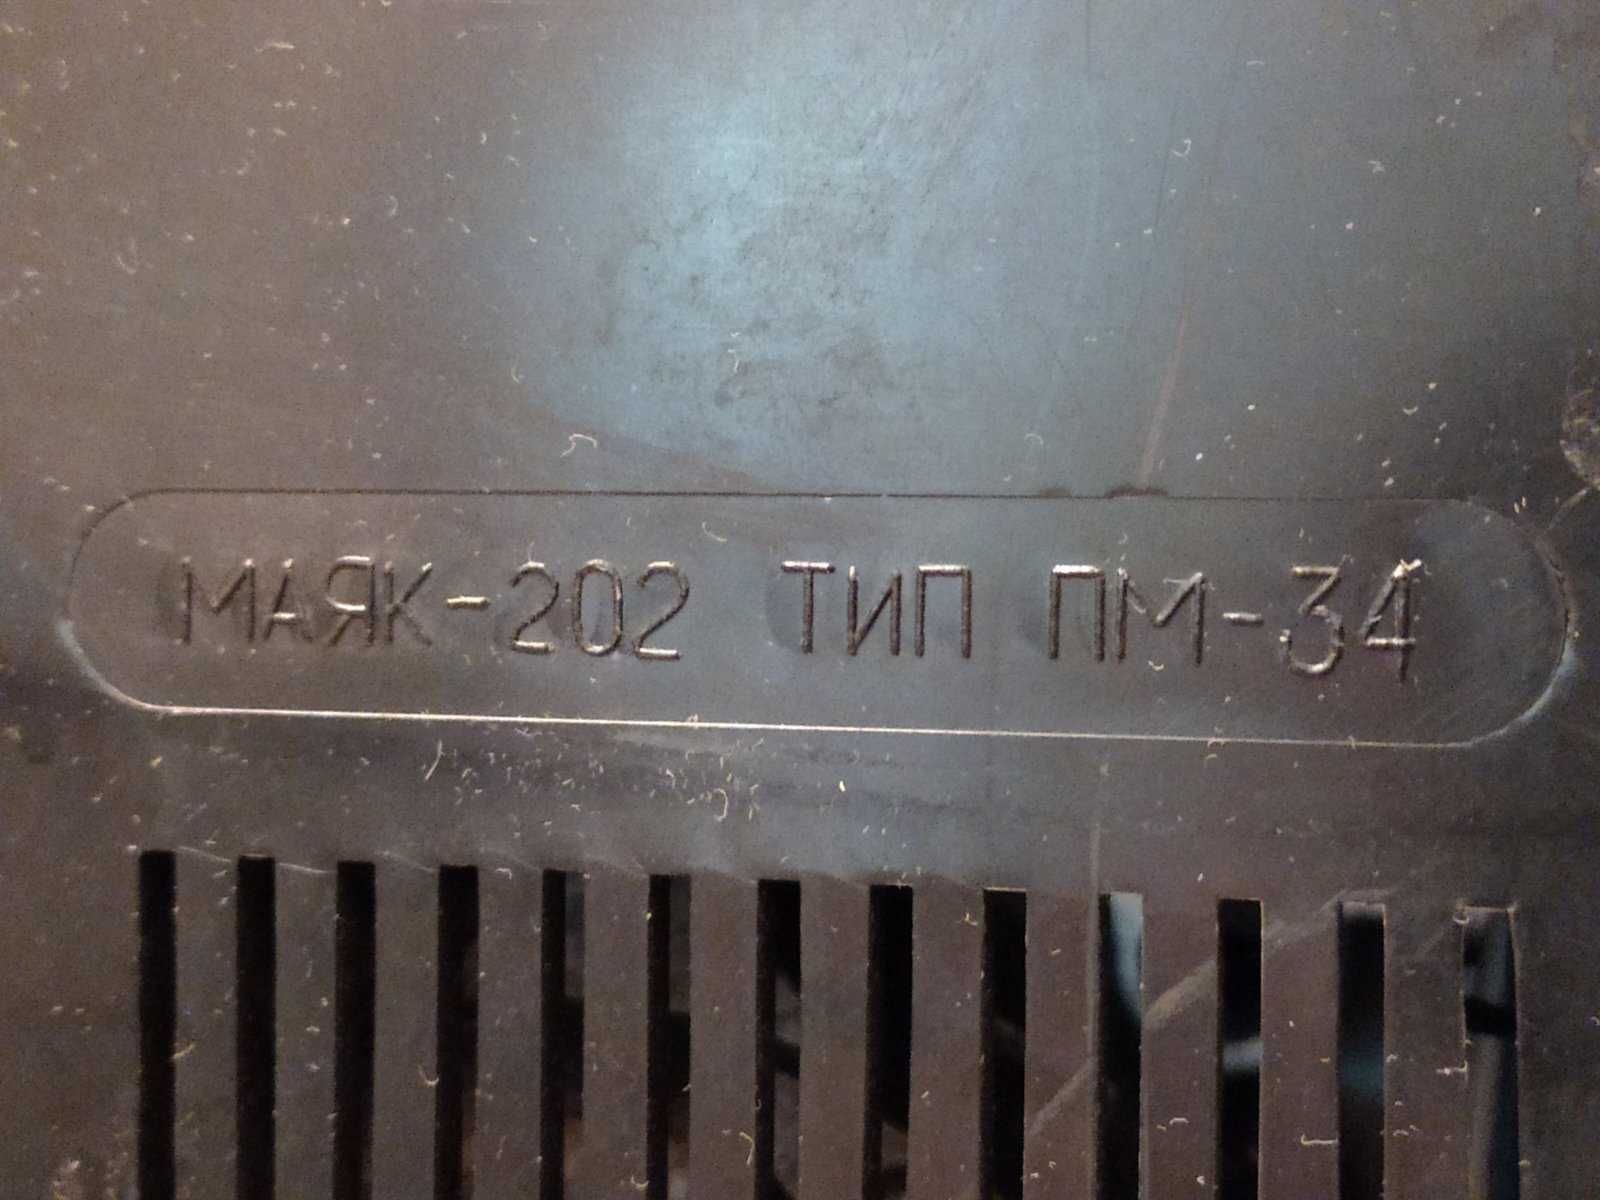 бобинный магнитофон МАЯК 202  ПМ 34